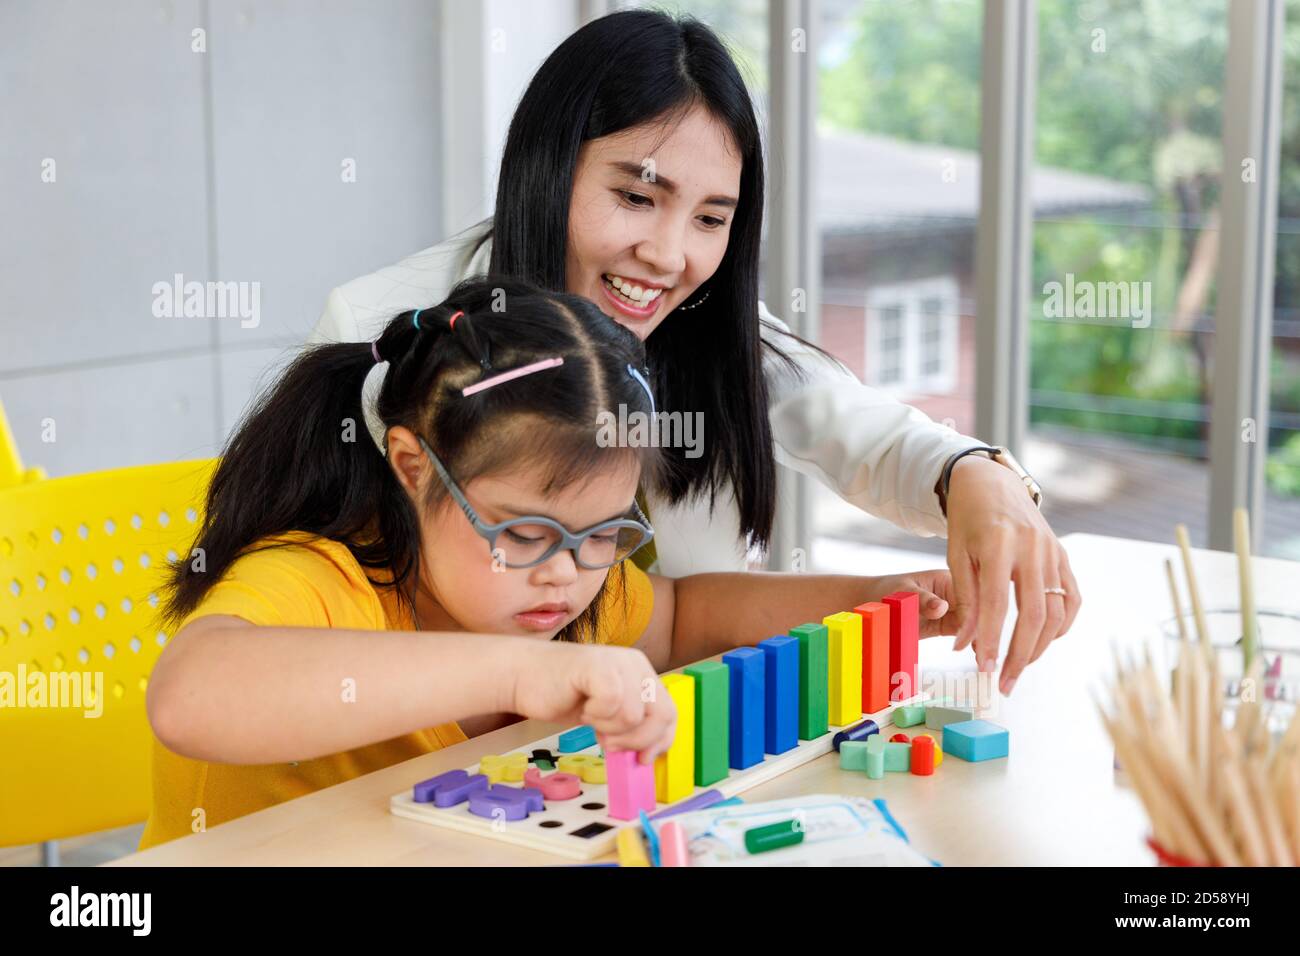 Asiatische Mädchen mit Down-Syndrom spielen Puzzle-Spielzeug mit ihrem  Lehrer im Klassenzimmer Stockfotografie - Alamy